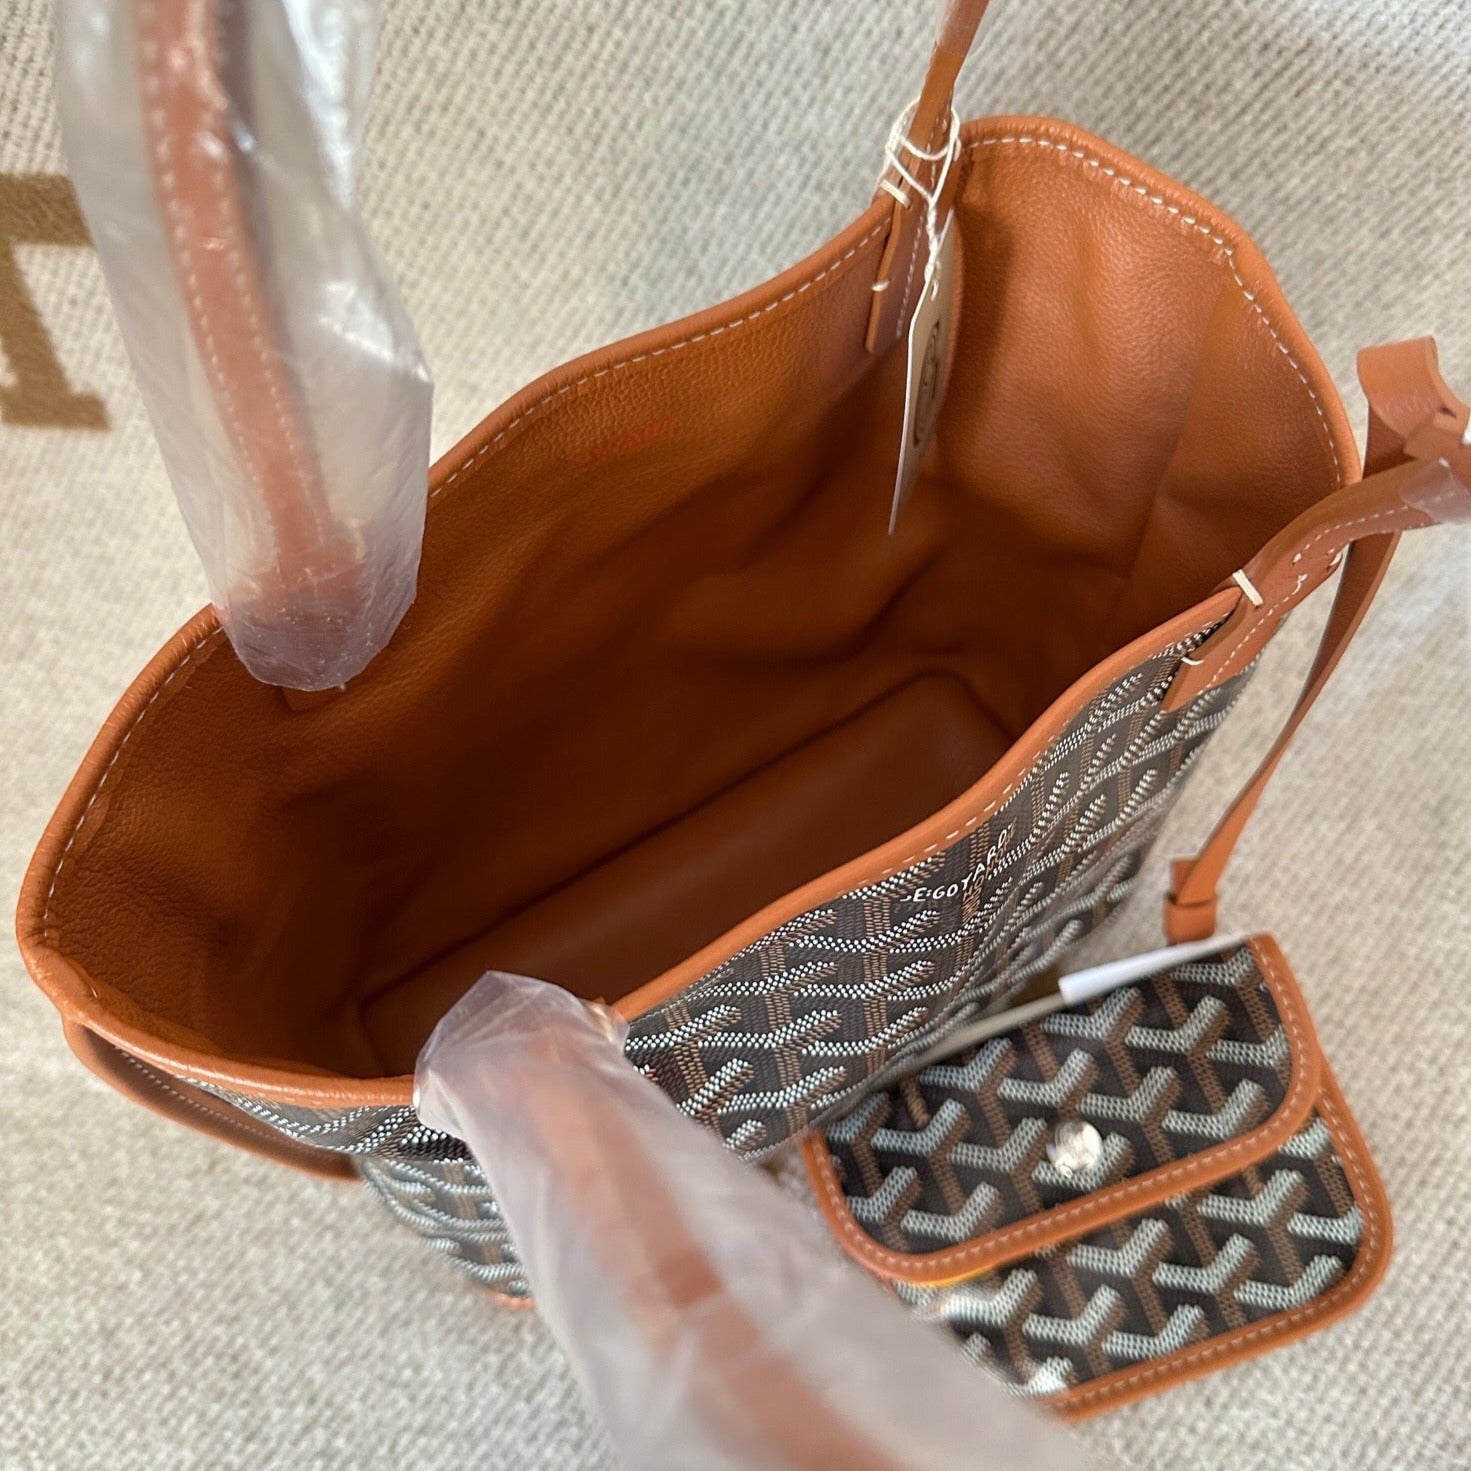 goyard mens bags - Buy goyard mens bags at Best Price in Malaysia